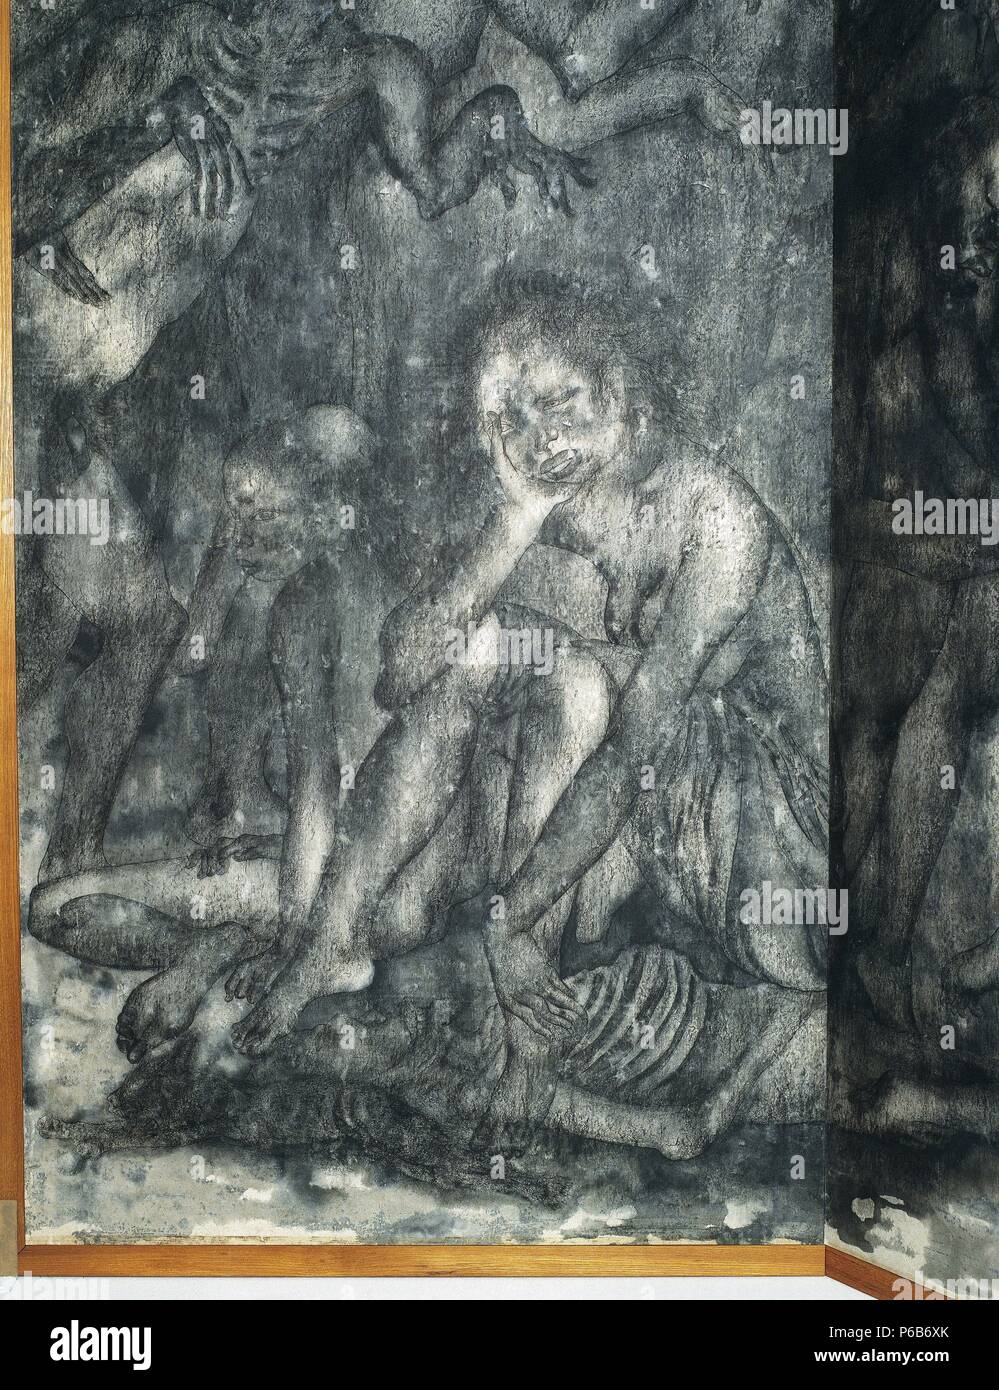 ARTE SIGLO XX. JAPON. ASIA. MARUKI, Iri. Pintor japonés que sufrió la tragedia de Hiroshima. 'FANTASMAS'. Detalle de un biombo de 8 x 3 m., que representa las escenas vividas algunos instantes después de la explosión de la bomba atómica sobre la ciudad. Stock Photo